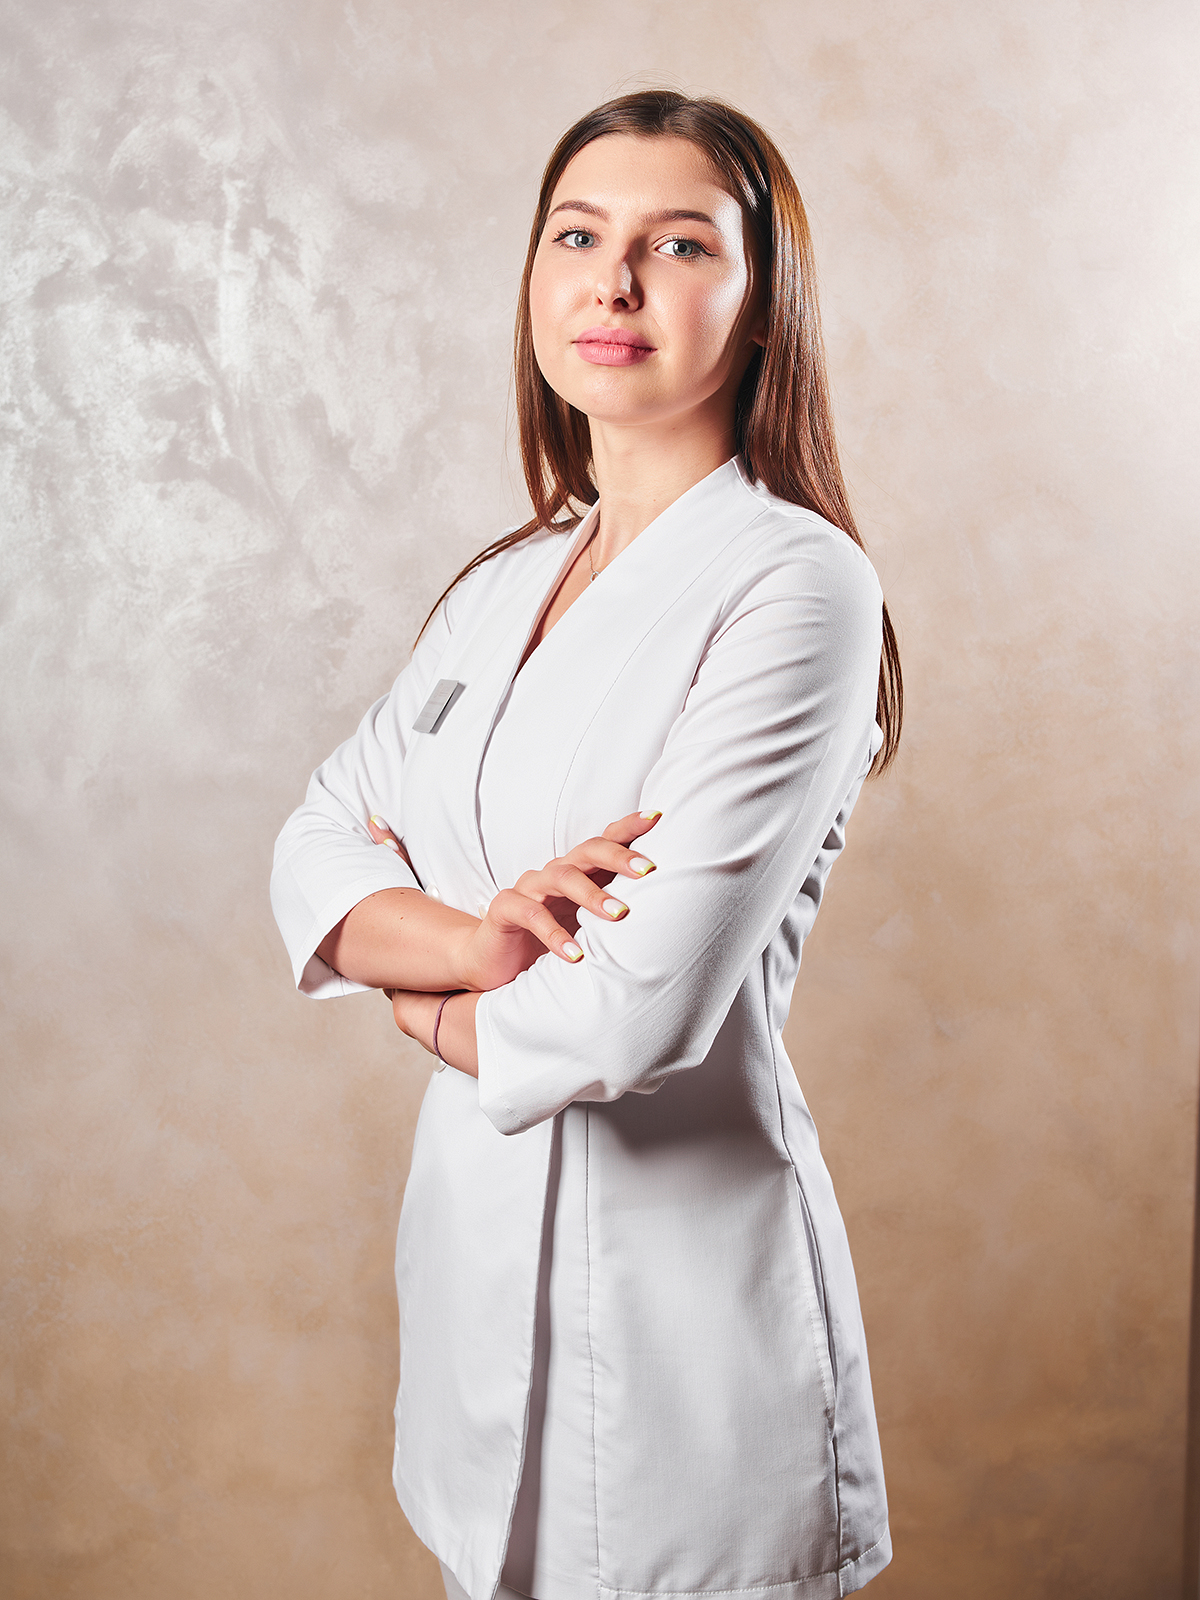 Специалист по лазерной эпиляции клиники "Анатомия" в Краснодаре, Портянченко Виктория Геннадьевна